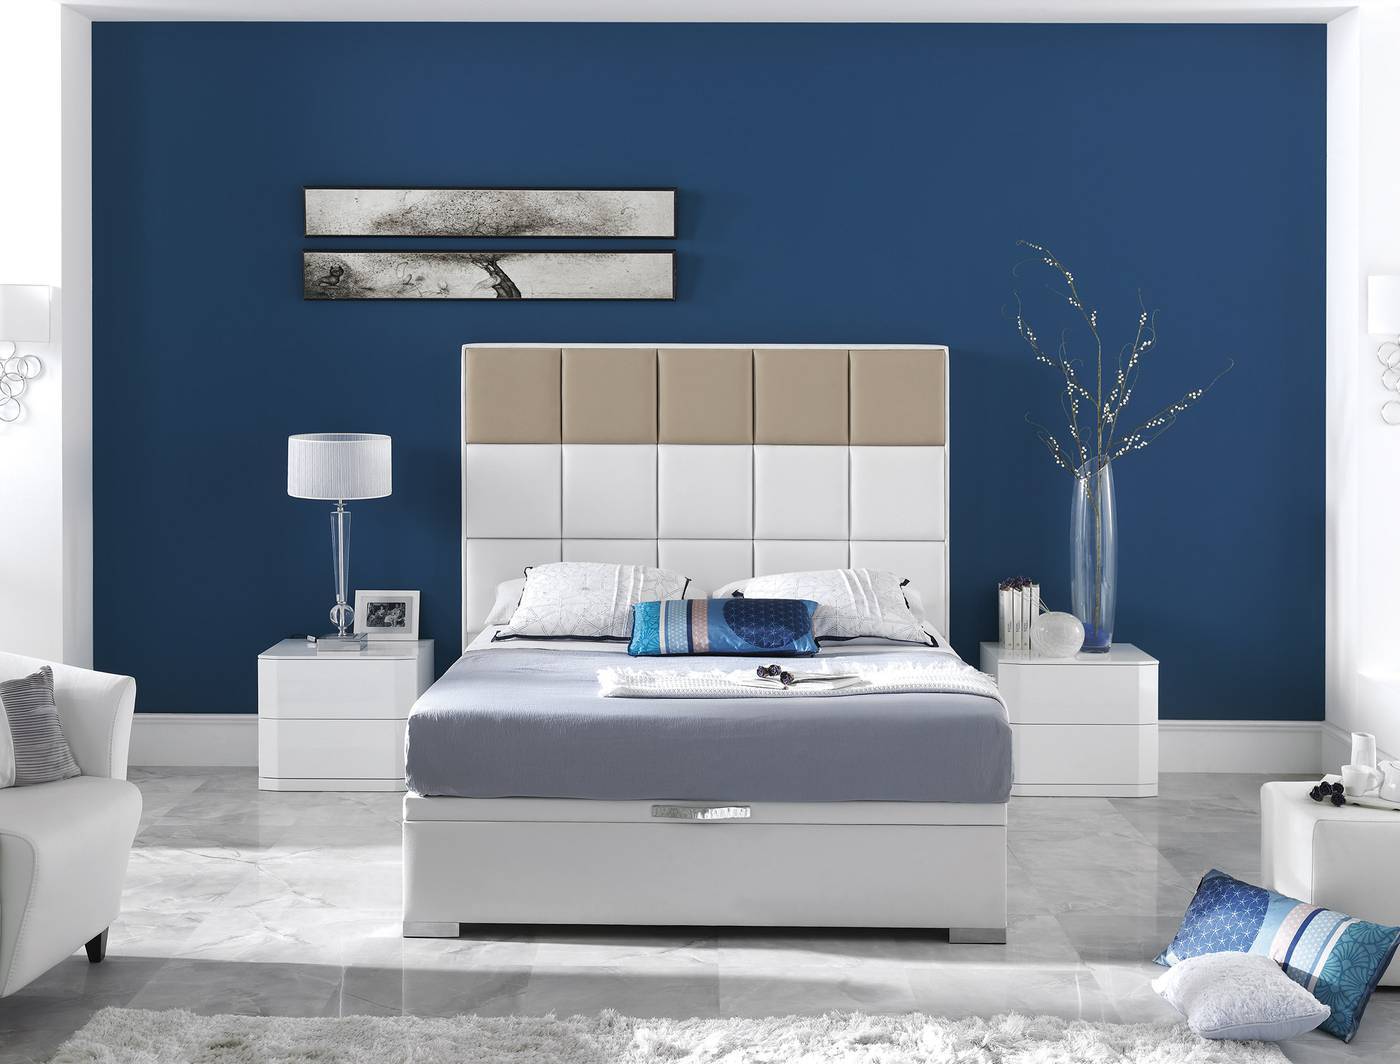 Cama o Cabecero para cama de 150, tapizado en polipiel bicolor, disponible en varios colores.